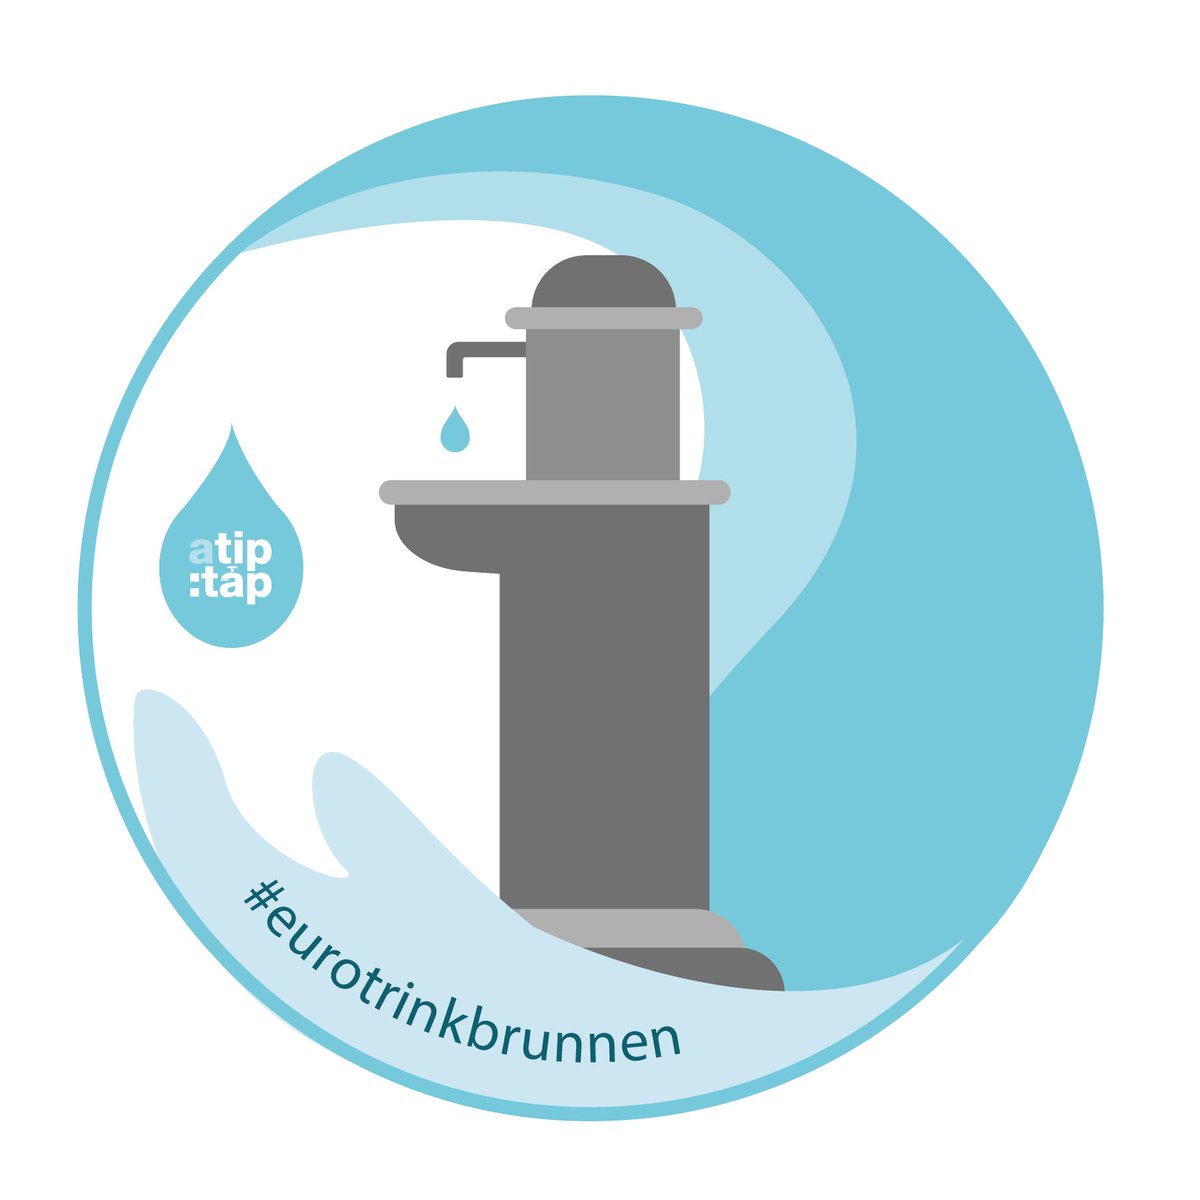 Letzte Chance: Heute endet die Bewerbungsfrist für einen der 51 Euro-Trinkbrunnen! Städte, Gemeinde und Wasserversorger können mit etwas Glück 15000 € für den Bau, die Inbetriebnahme und mindestens 5-jährigen Betrieb eines Brunnens gewinnen. Nichts wie los! #eurotrinkbrunnen